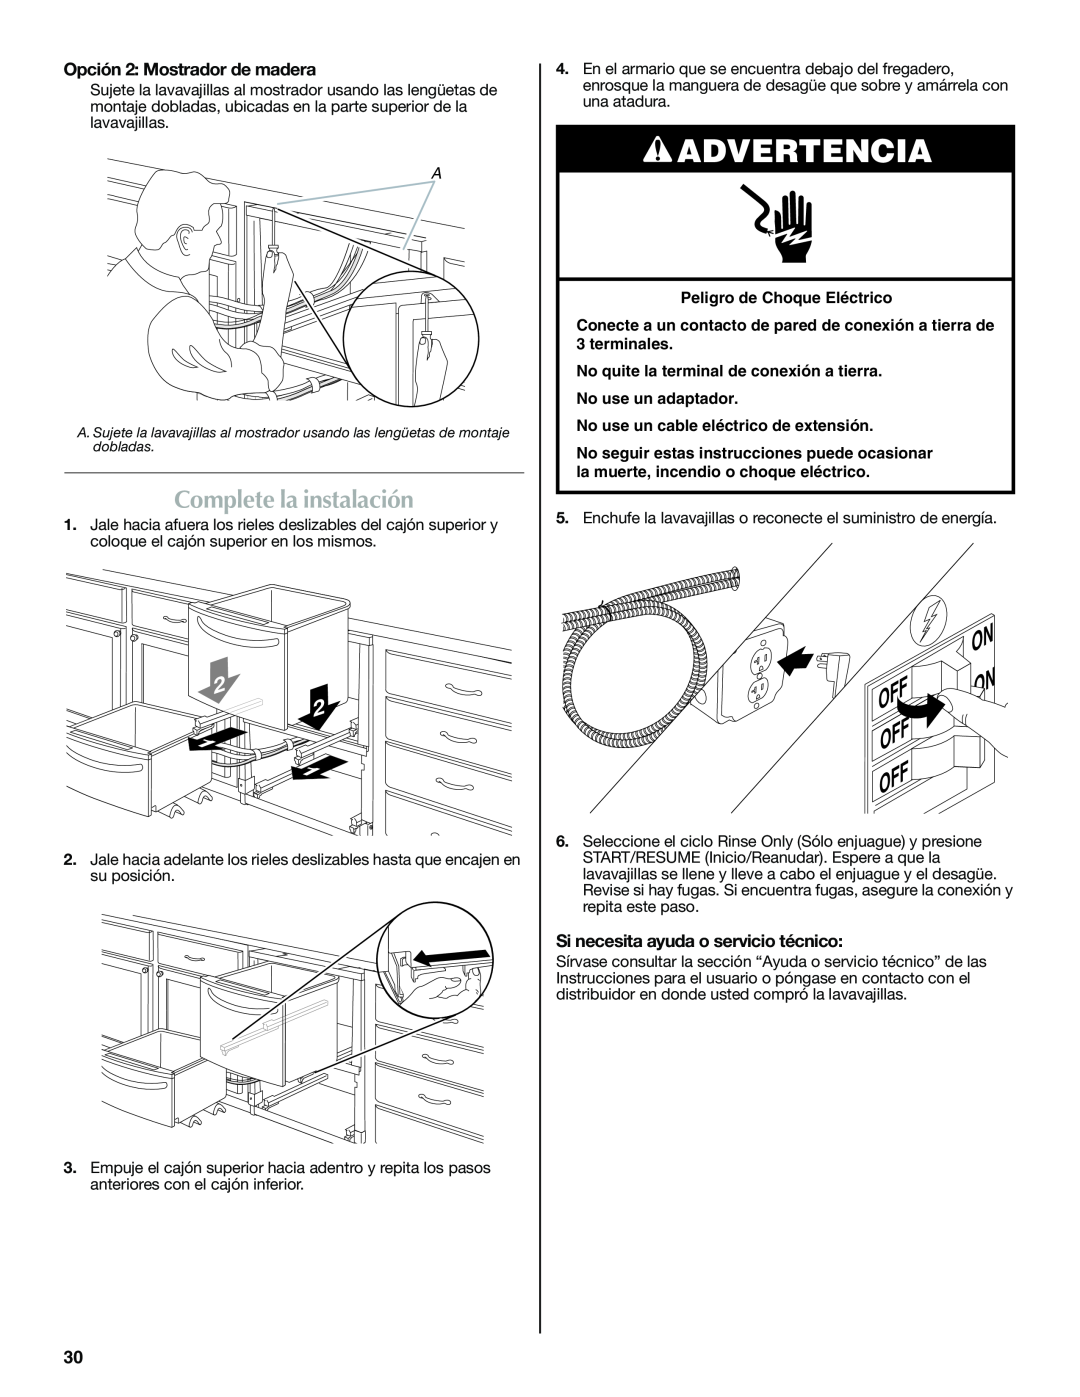 Maytag W10185071B installation instructions Complete la instalación, Advertencia, Opción 2: Mostrador de madera 